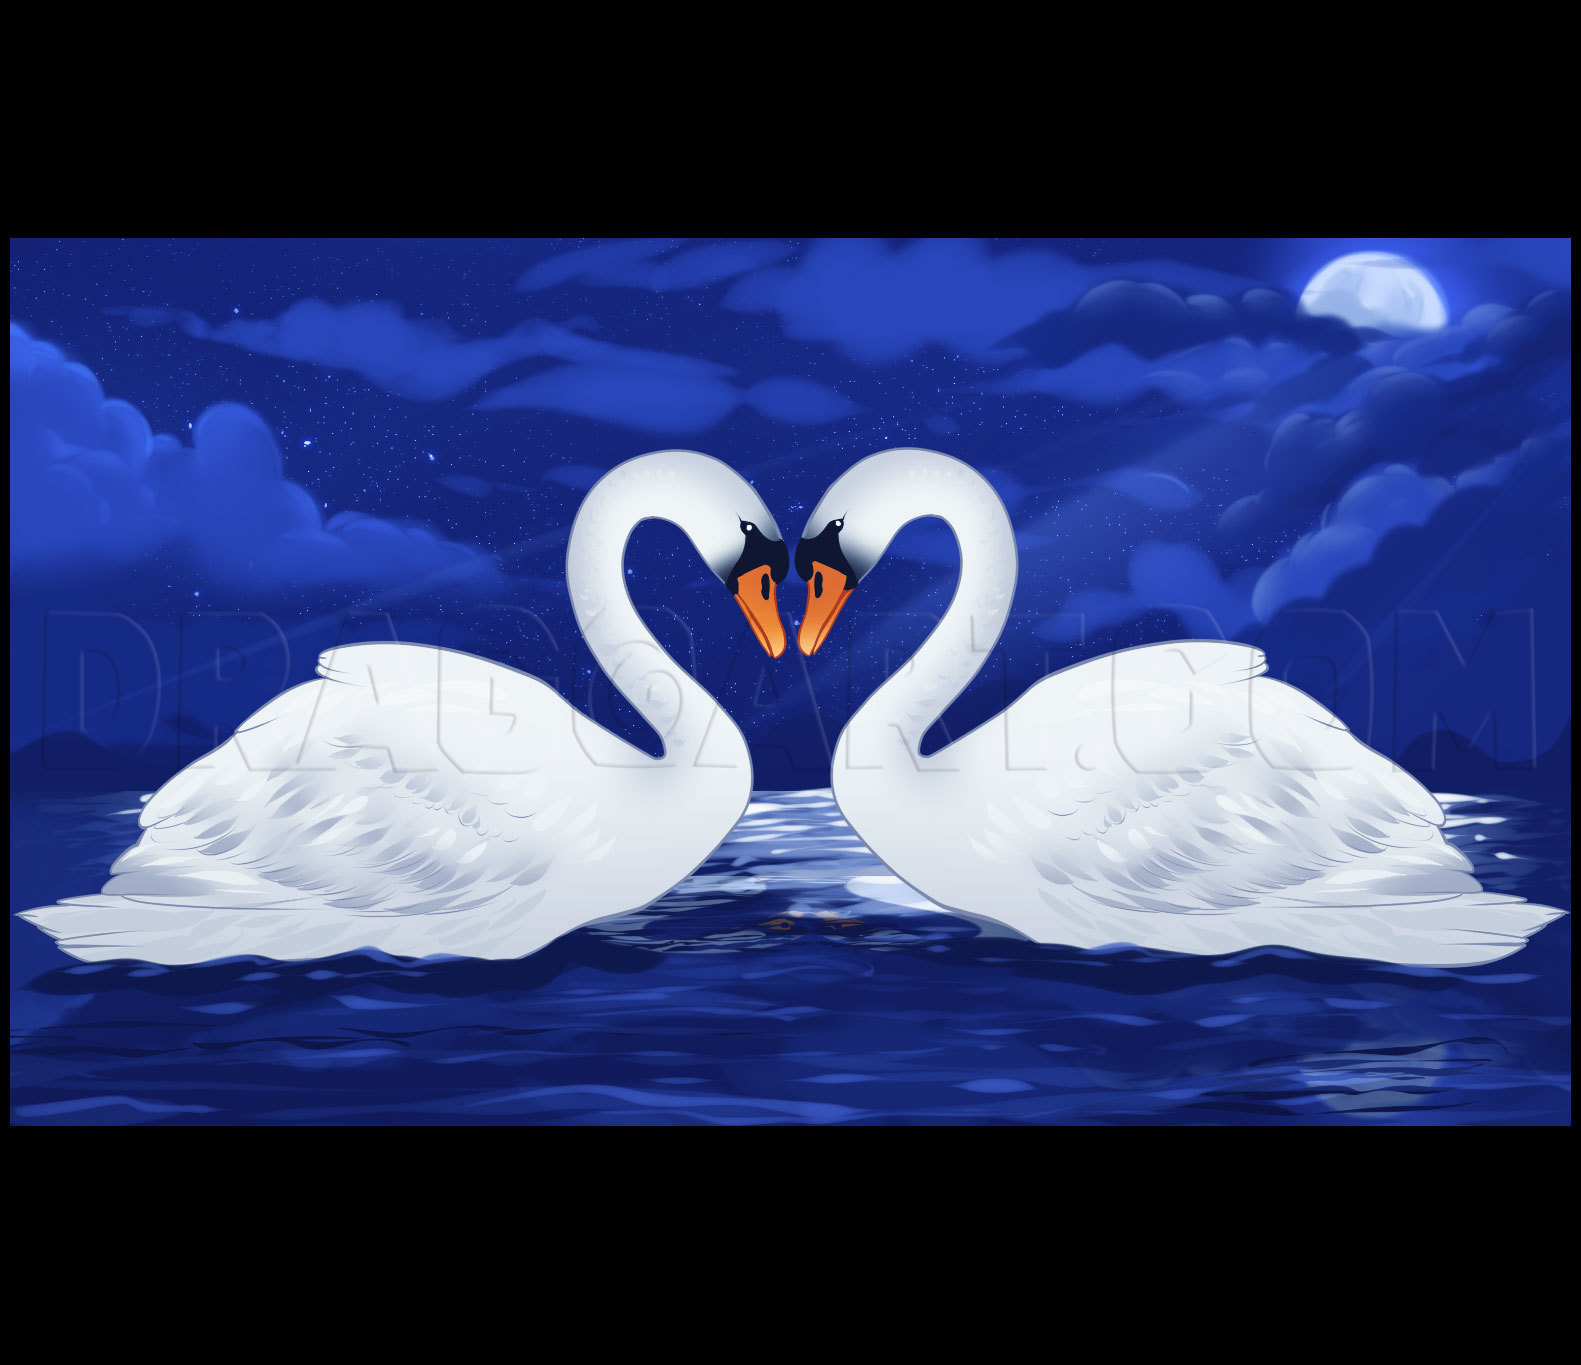 Swan Drawing Images - Free Download on Freepik